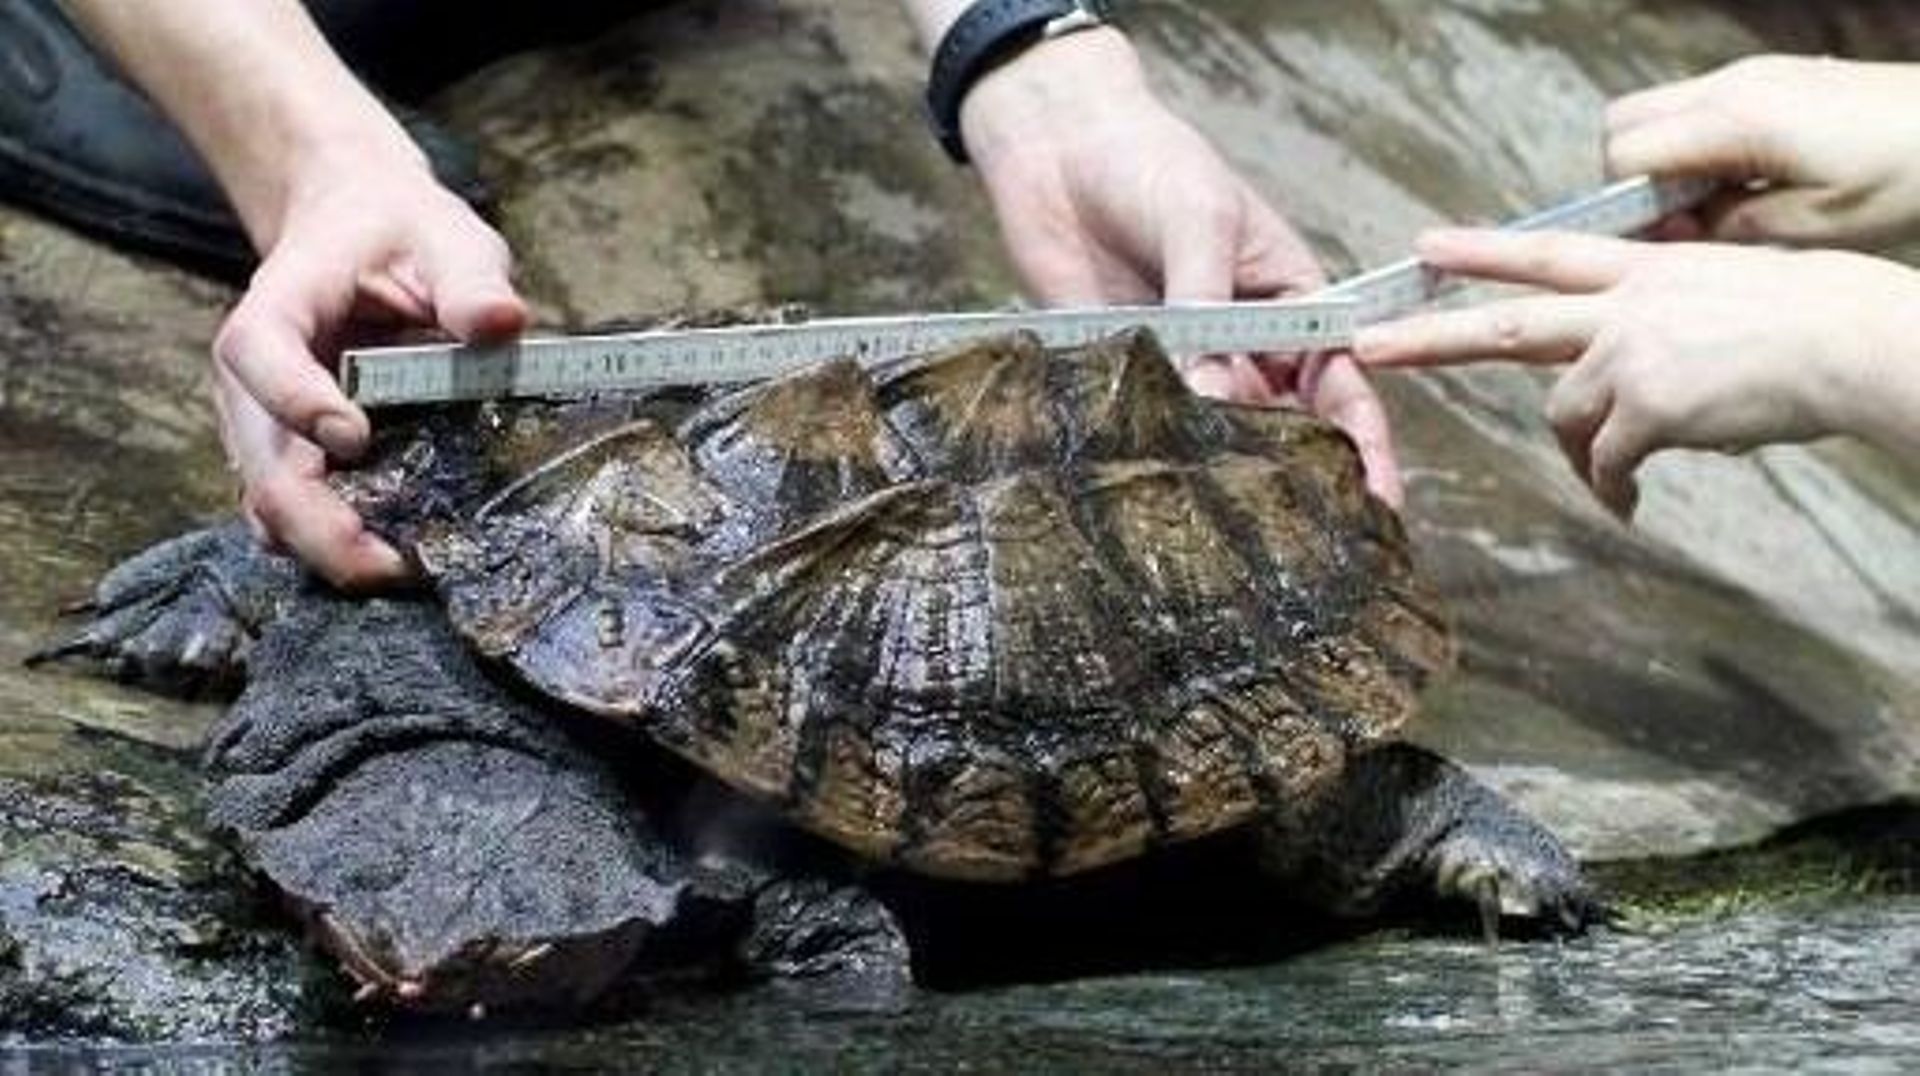 Amérique du Sud: protection accrue pour des grenouilles et tortues d'eau douce